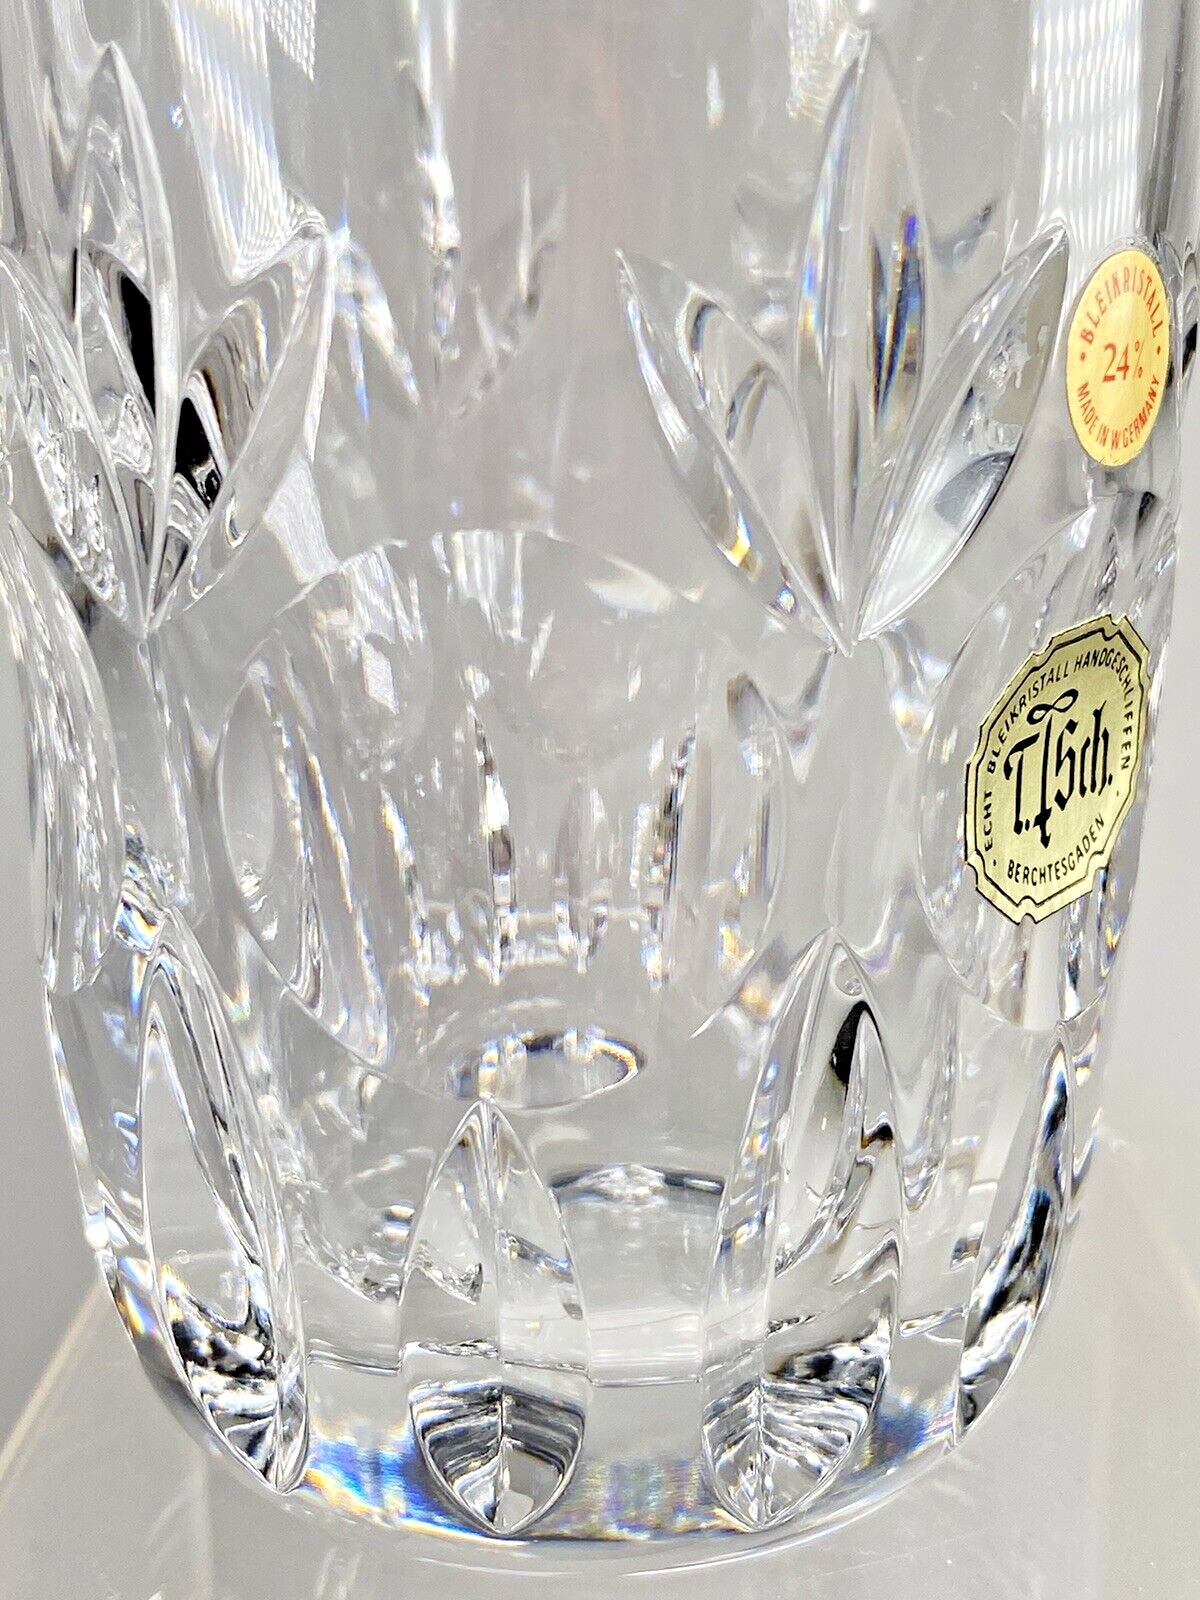 of Echt Six Handgeschliffen Bleikristall Berchtegaden Crystal Set | eBay Glasses Tisch